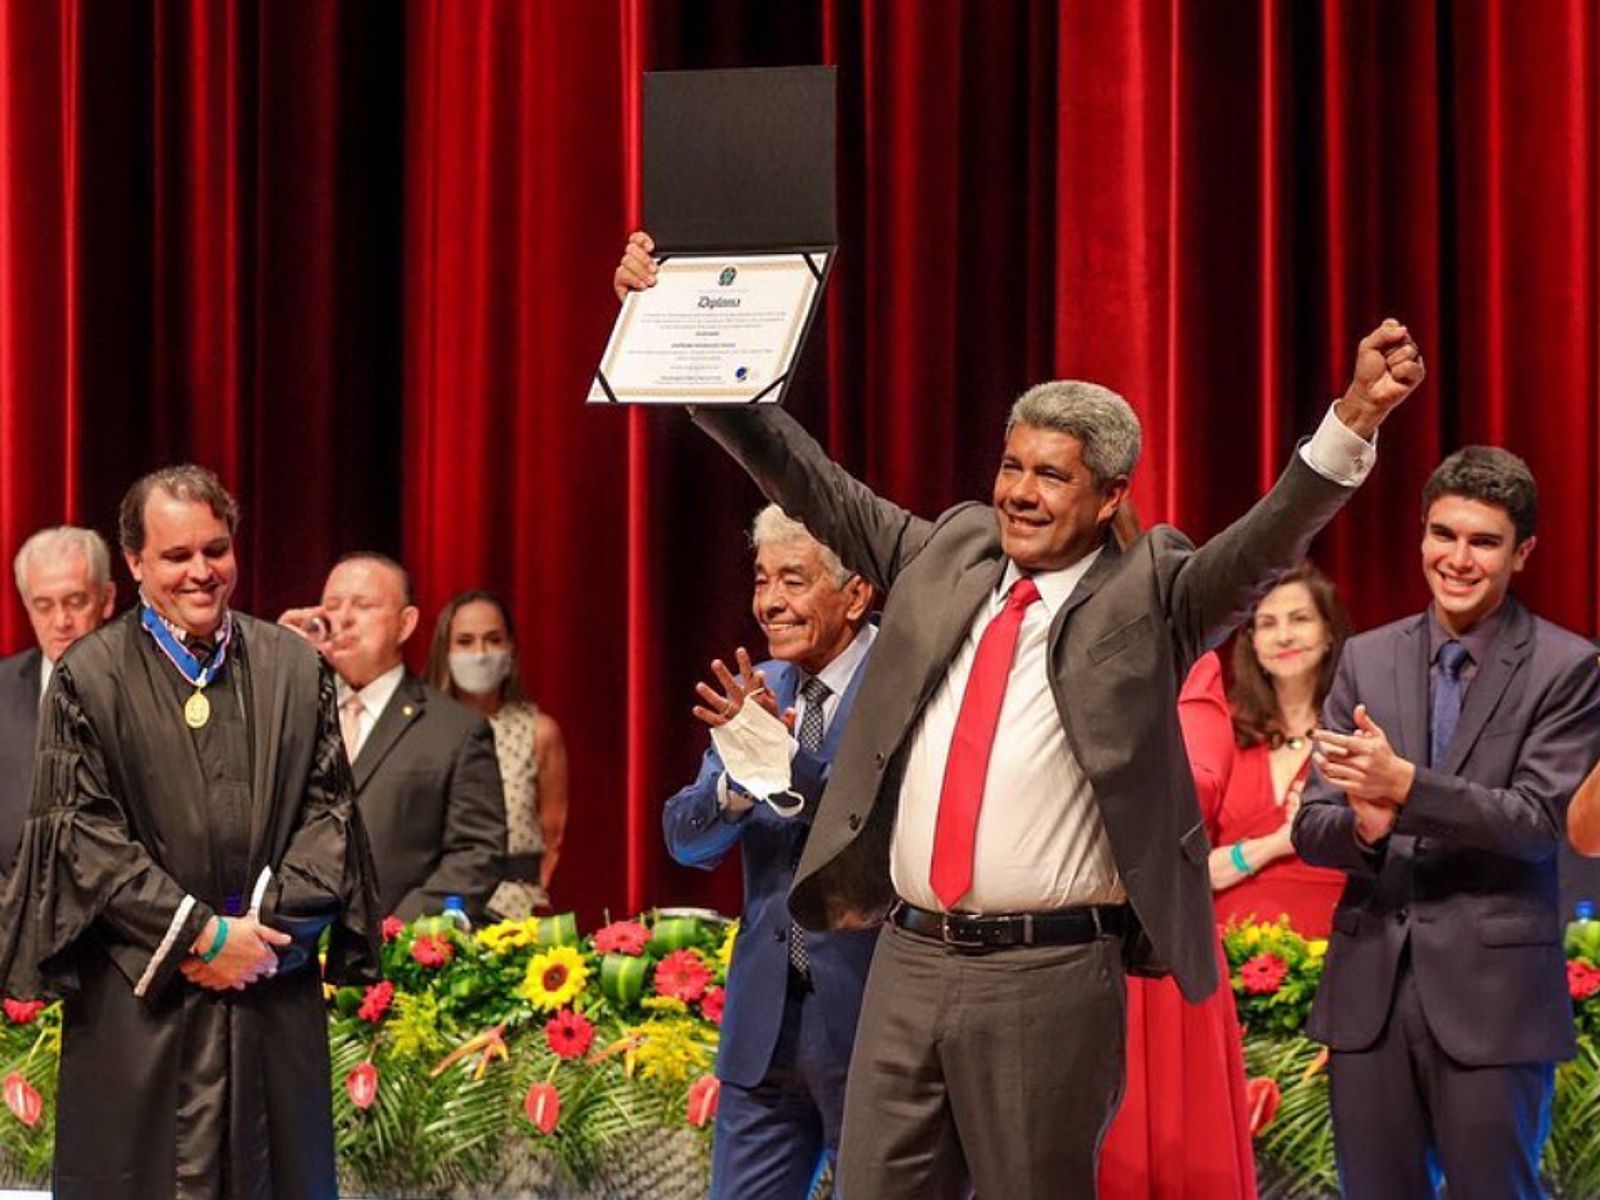 Jerônimo Rodrigues é diplomado em cerimônia no TCA: “Bahia terá governador indígena, negro e professor”. Veja fotos